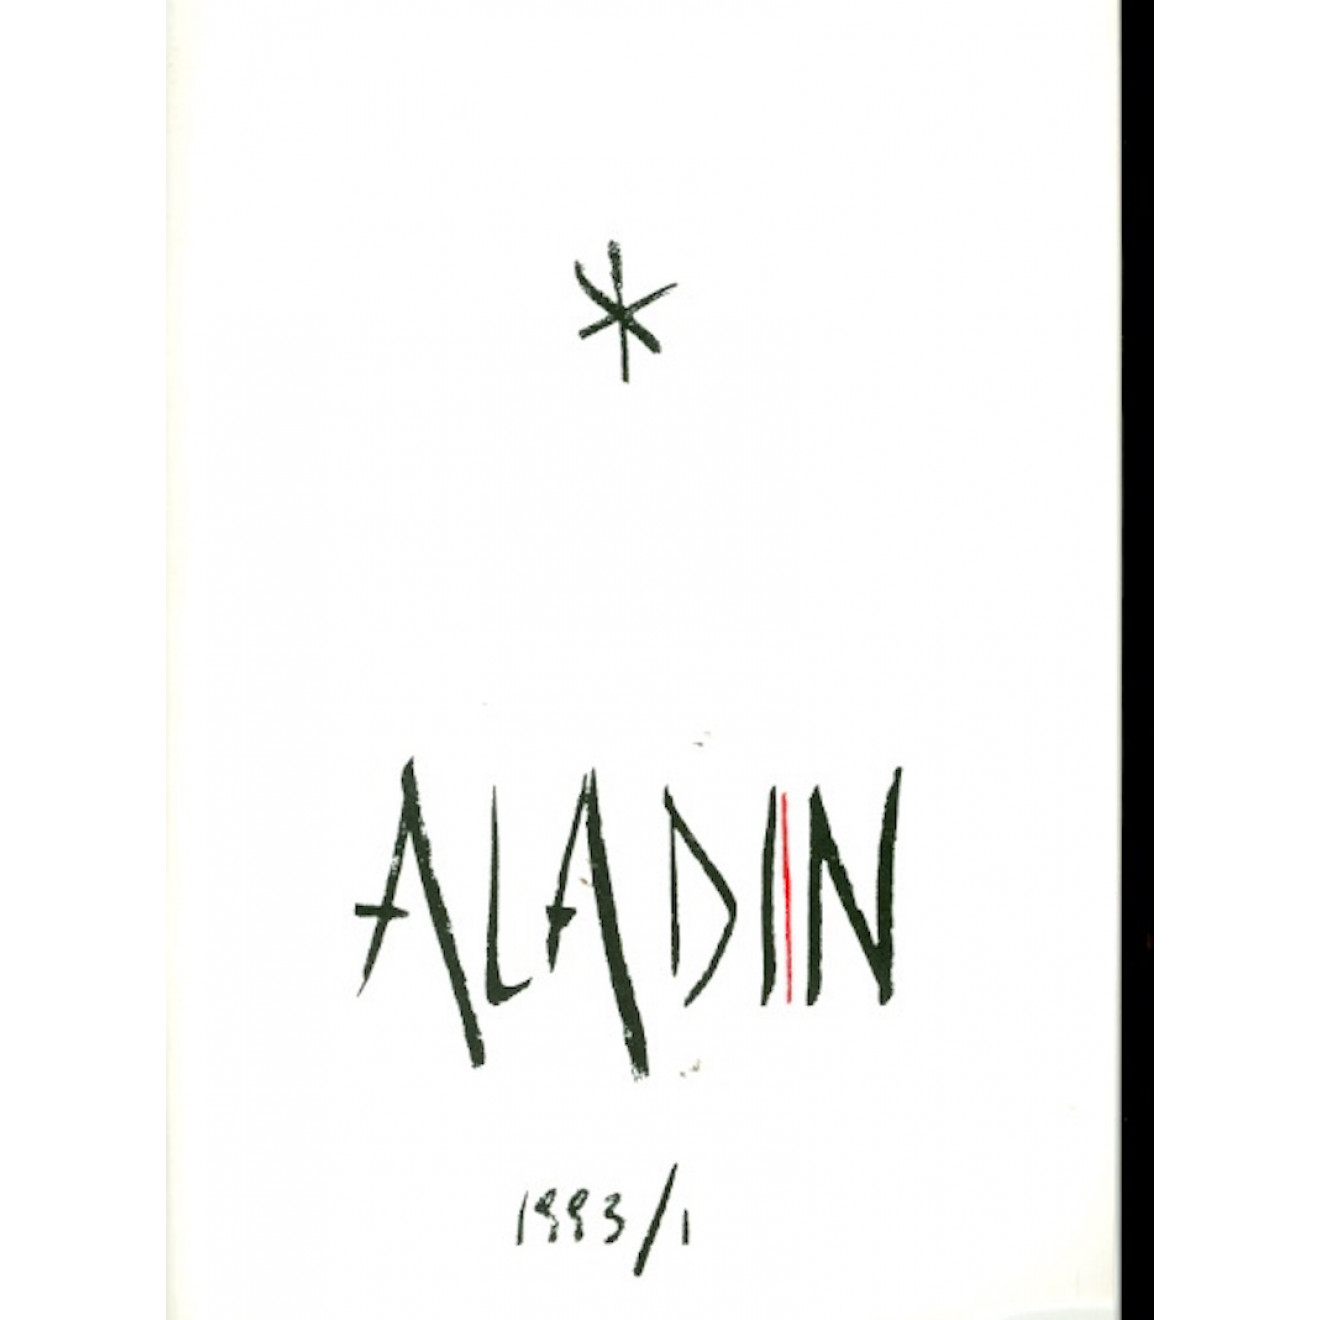 Aladin, Jahrgang 1993